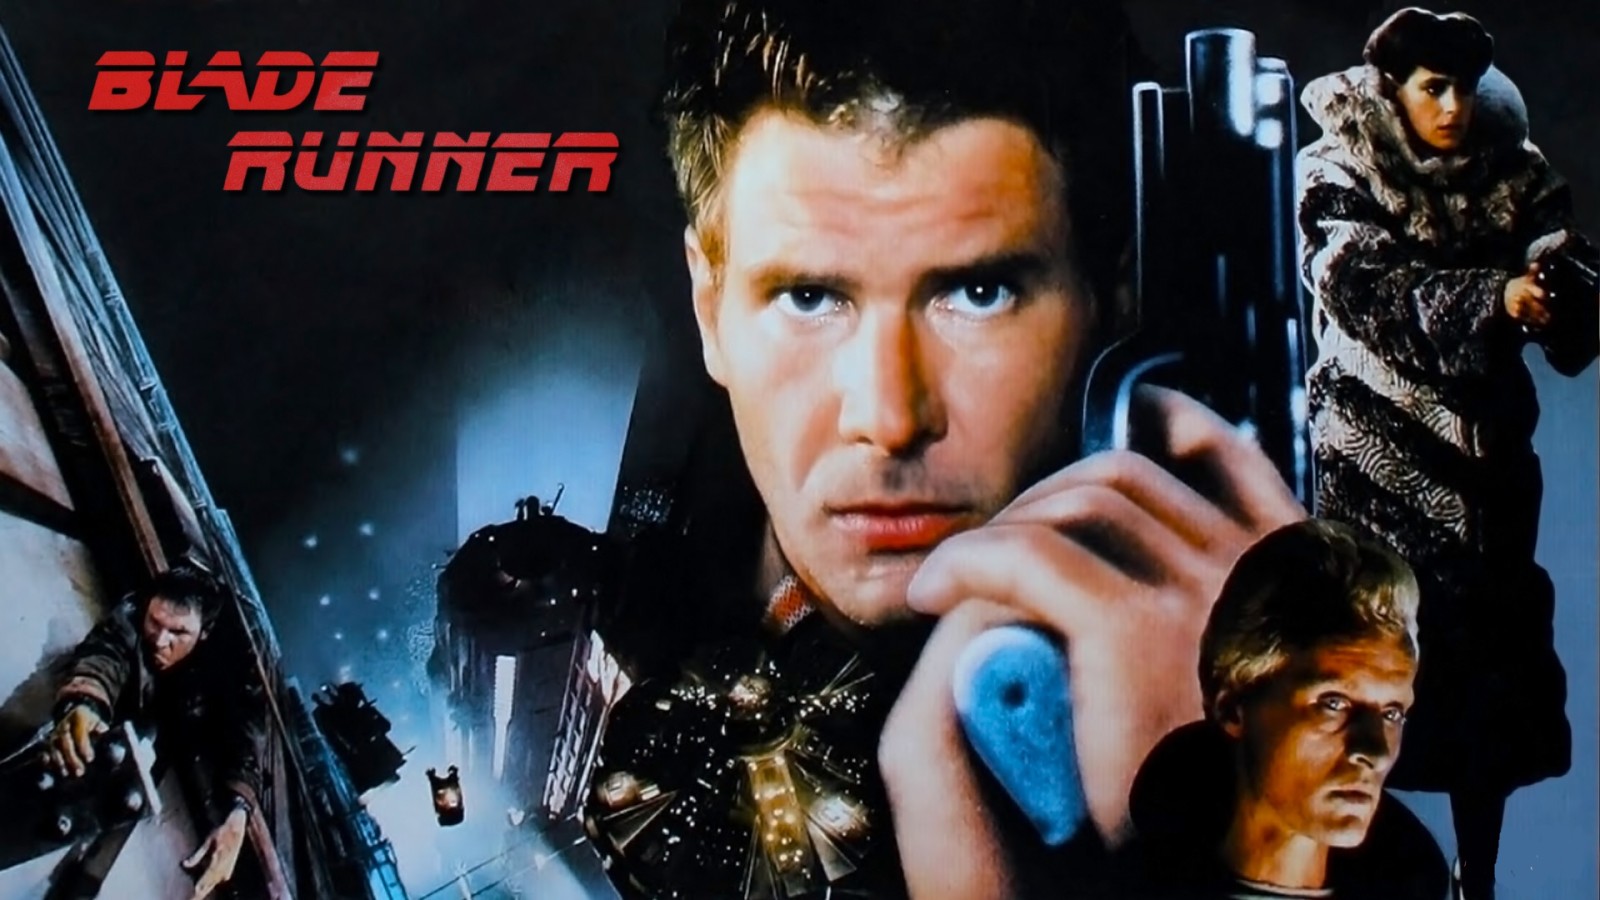 Amazon anuncia Blade Runner 2099, secuela de la cinta clásica 1